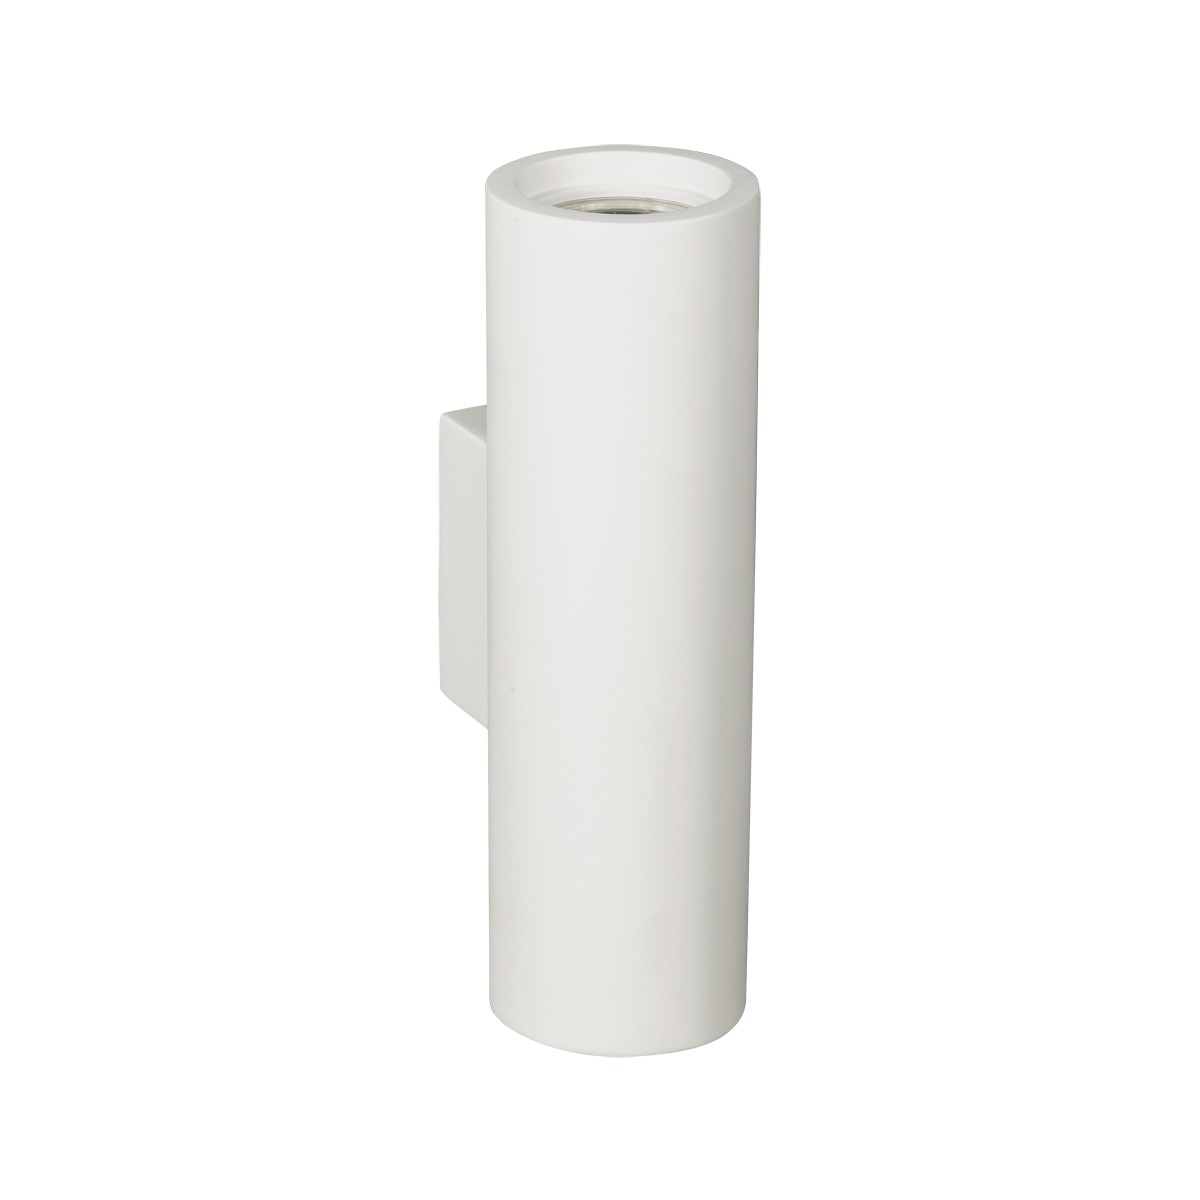 Φωτιστικό Τοίχου Γύψινο GU10x2 Λευκό Χρώμα          VK/09018